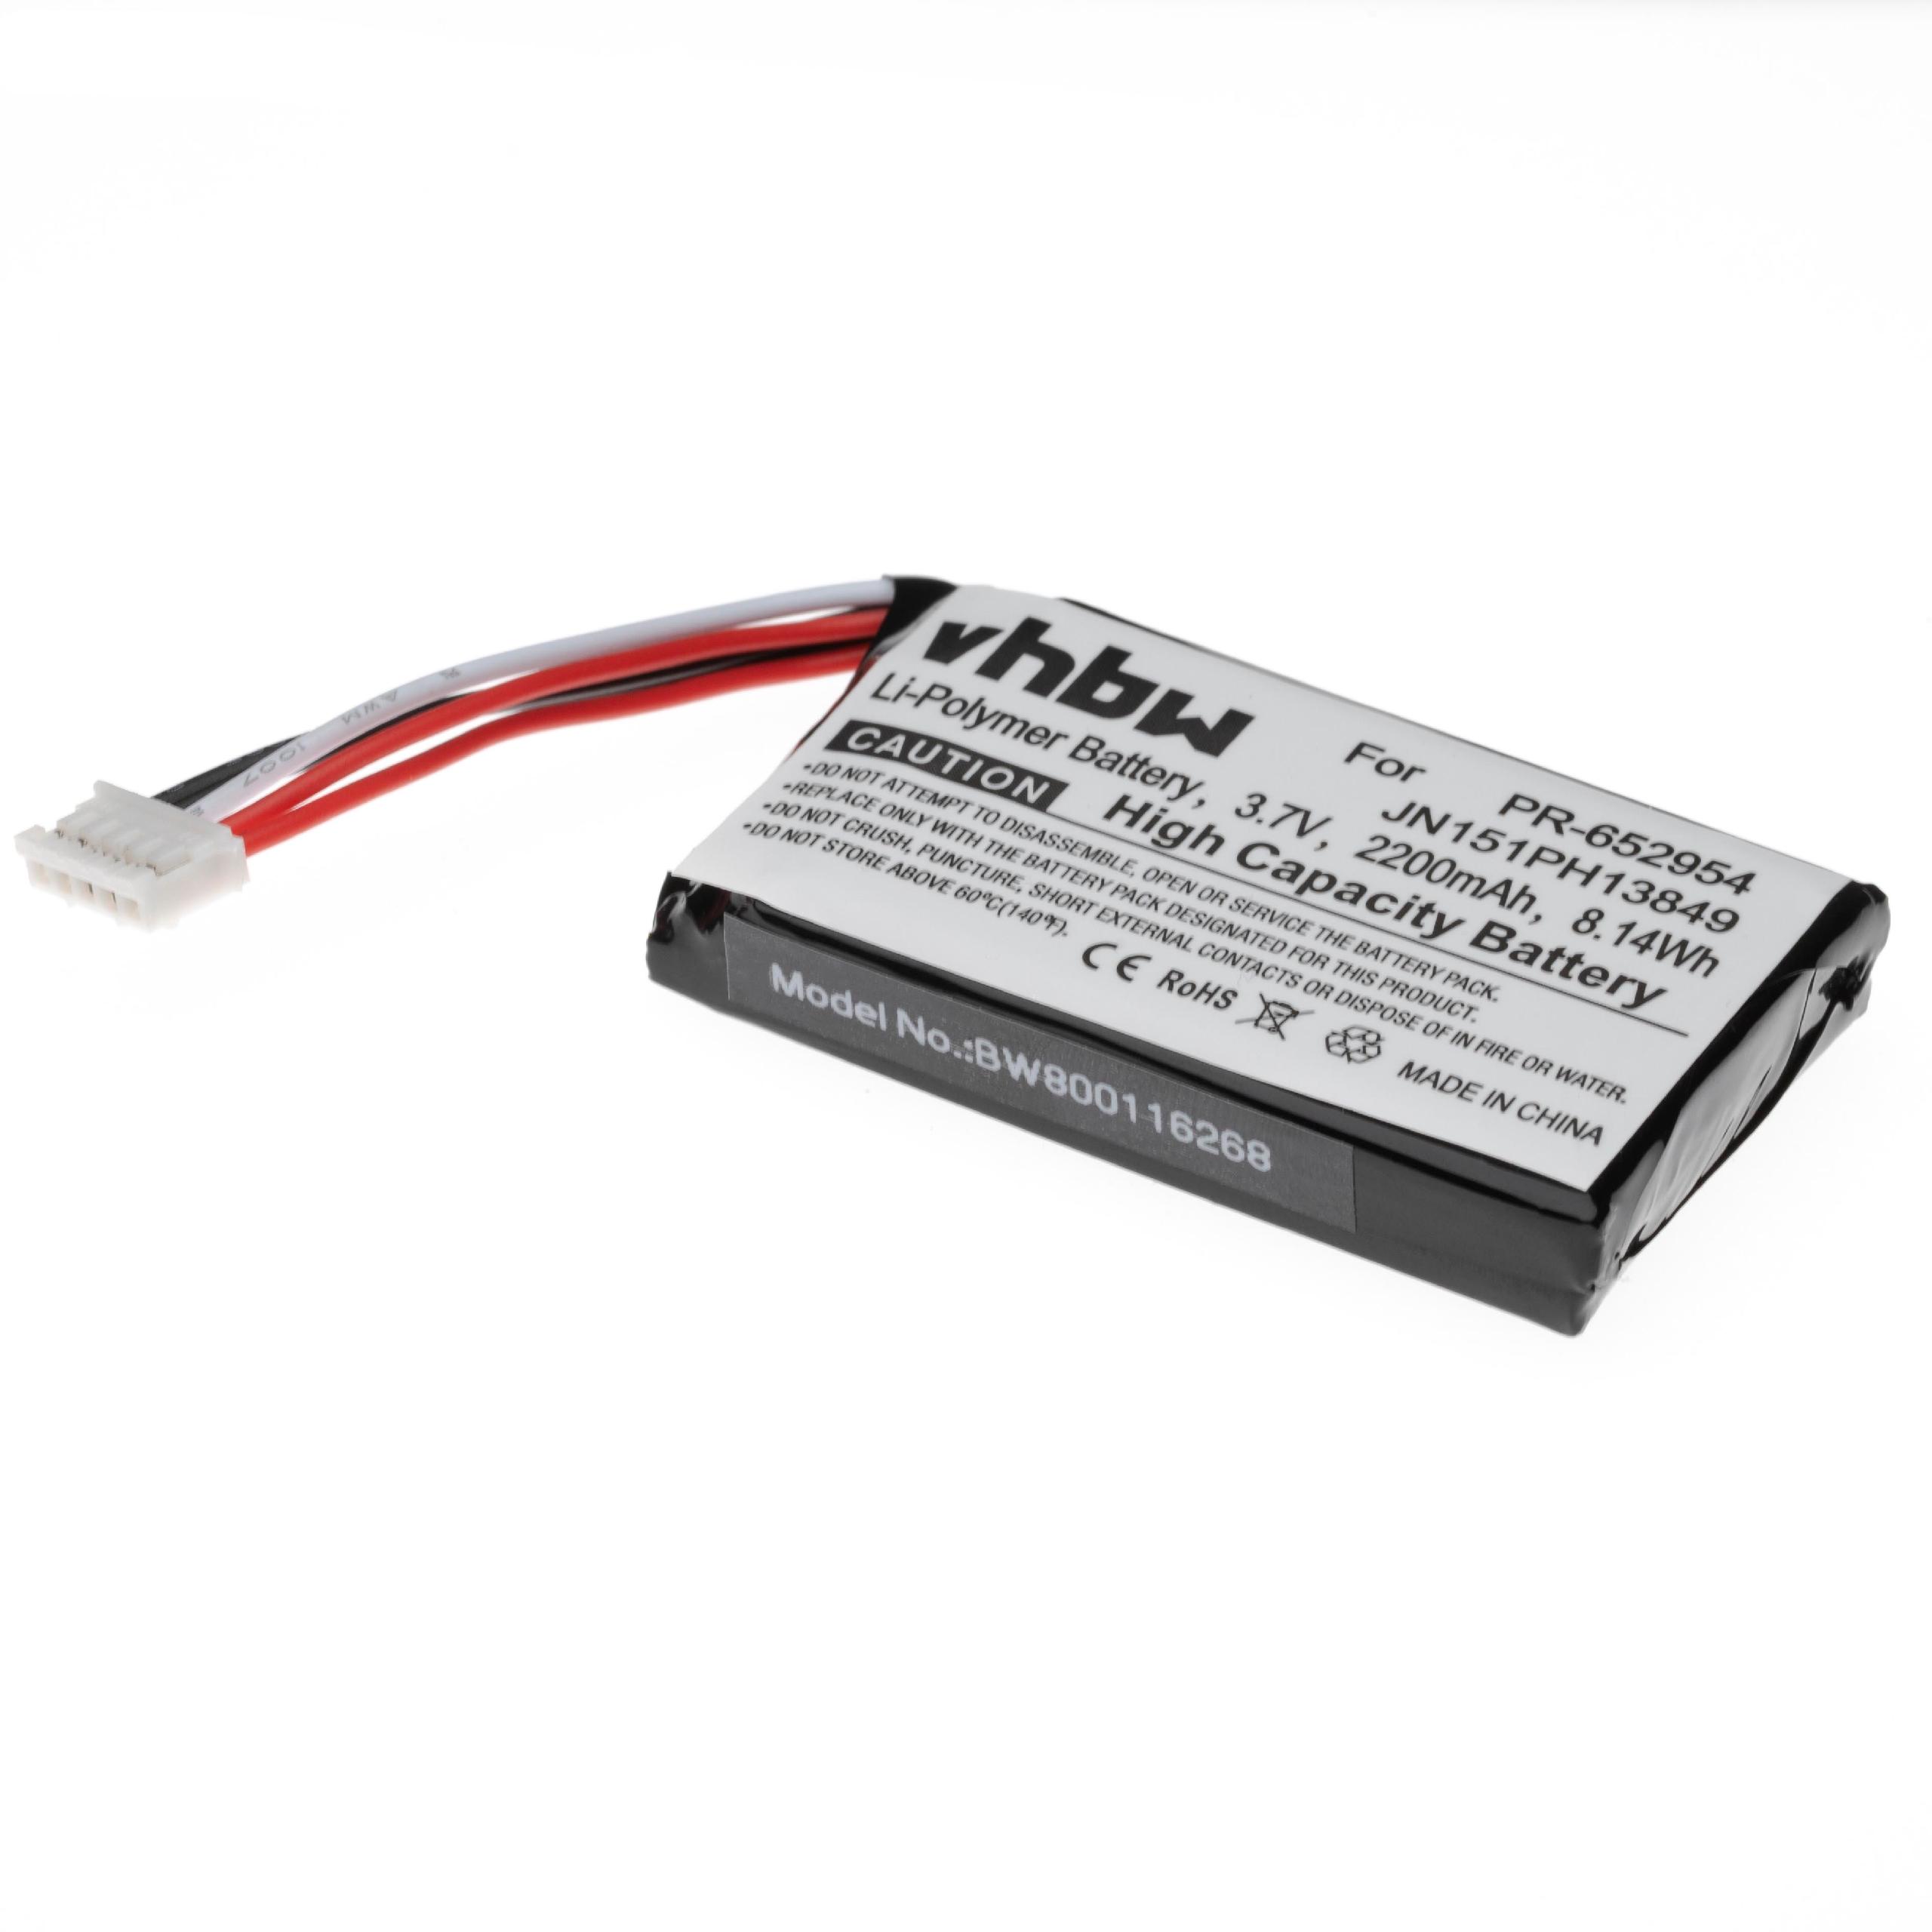  Battery replaces JBL JN151PH13849, PR-652954 for JBLLoudspeaker - Li-polymer 2200 mAh